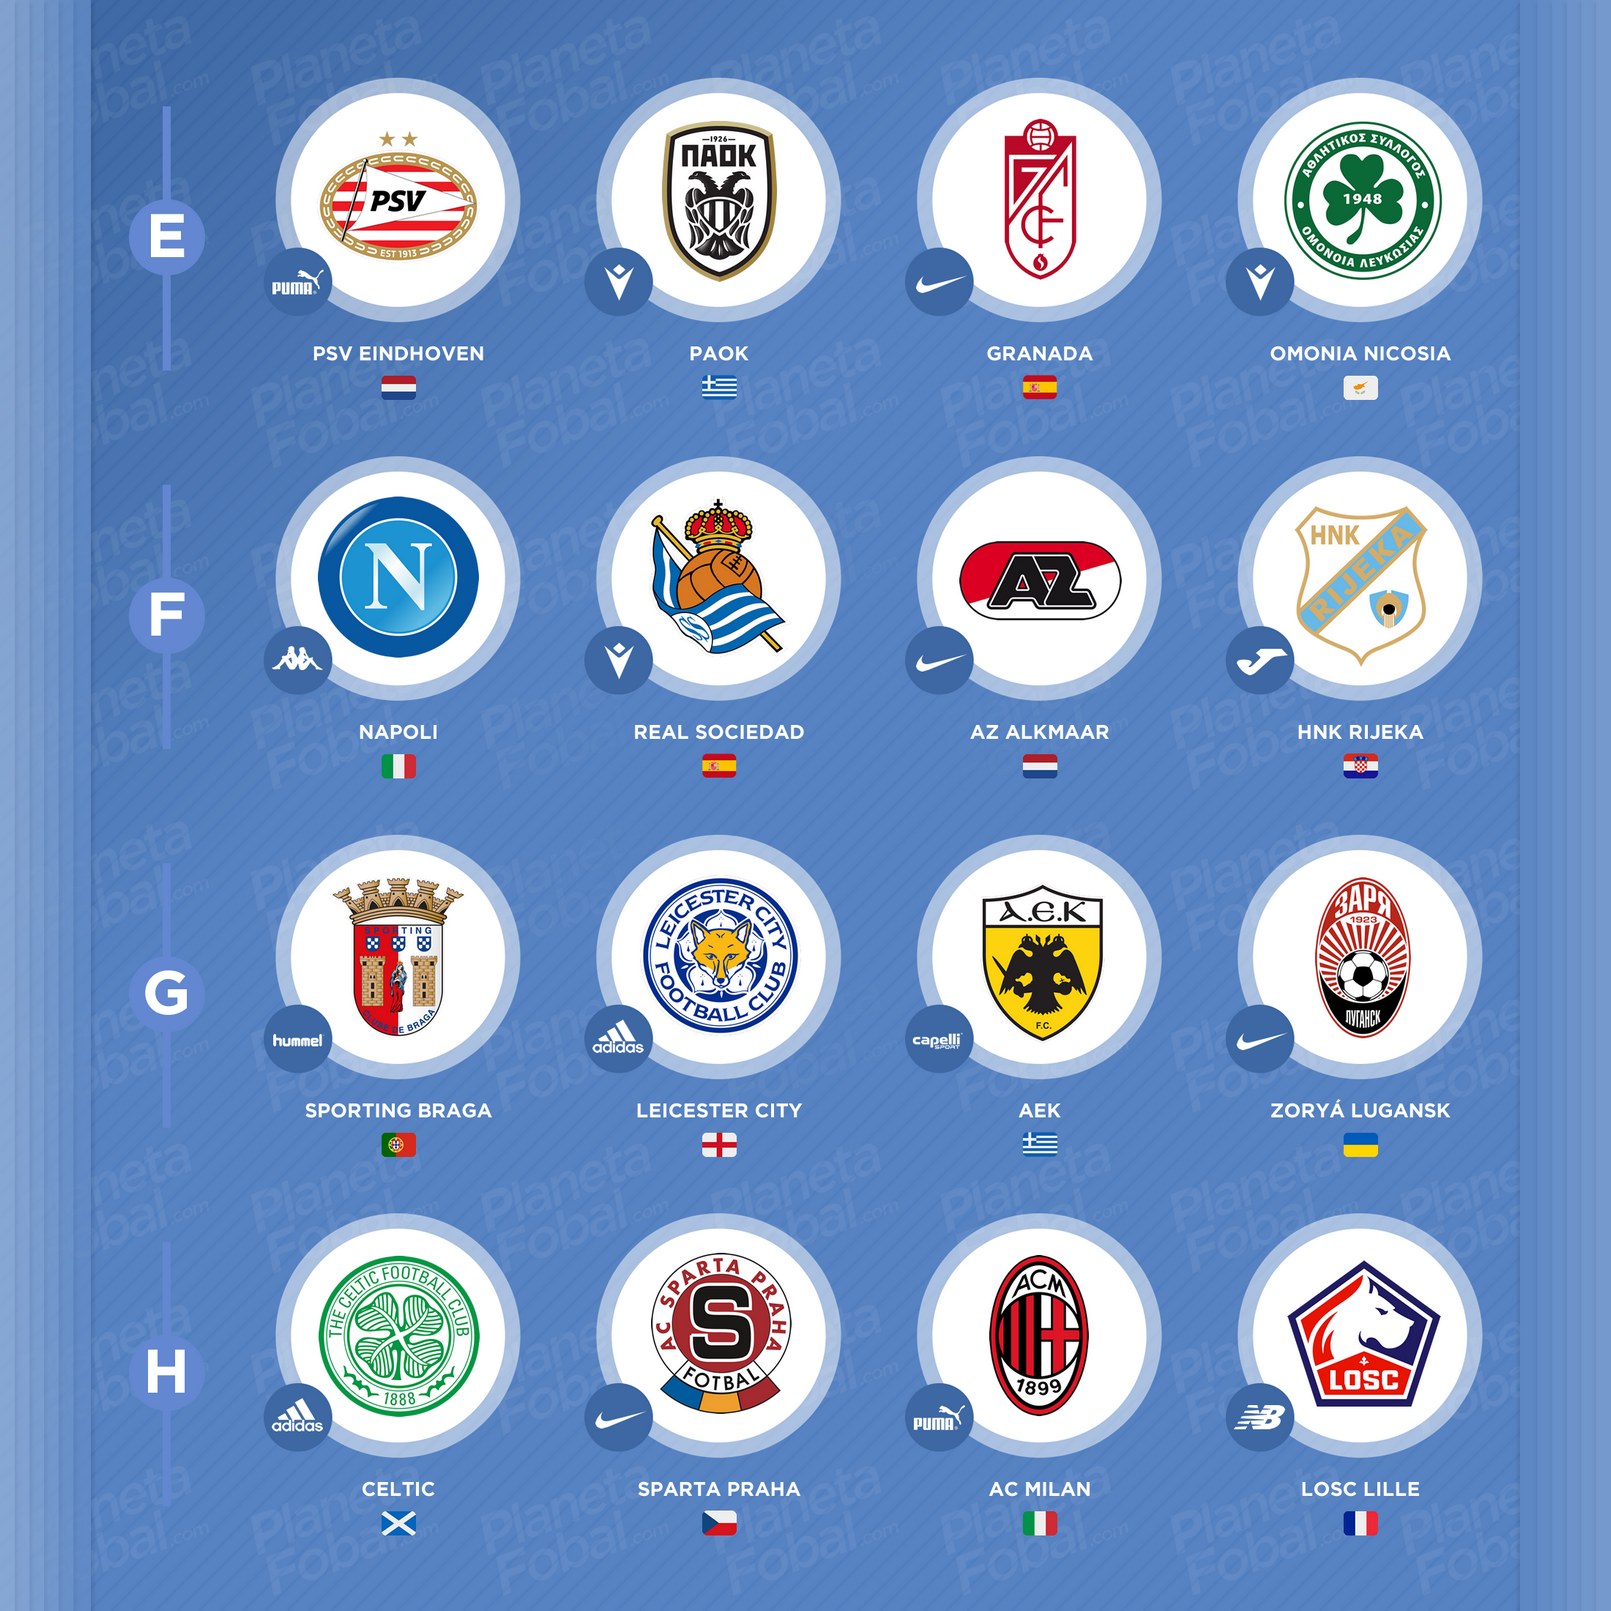 Marcas deportivas de la UEFA Europa League 2020/2021